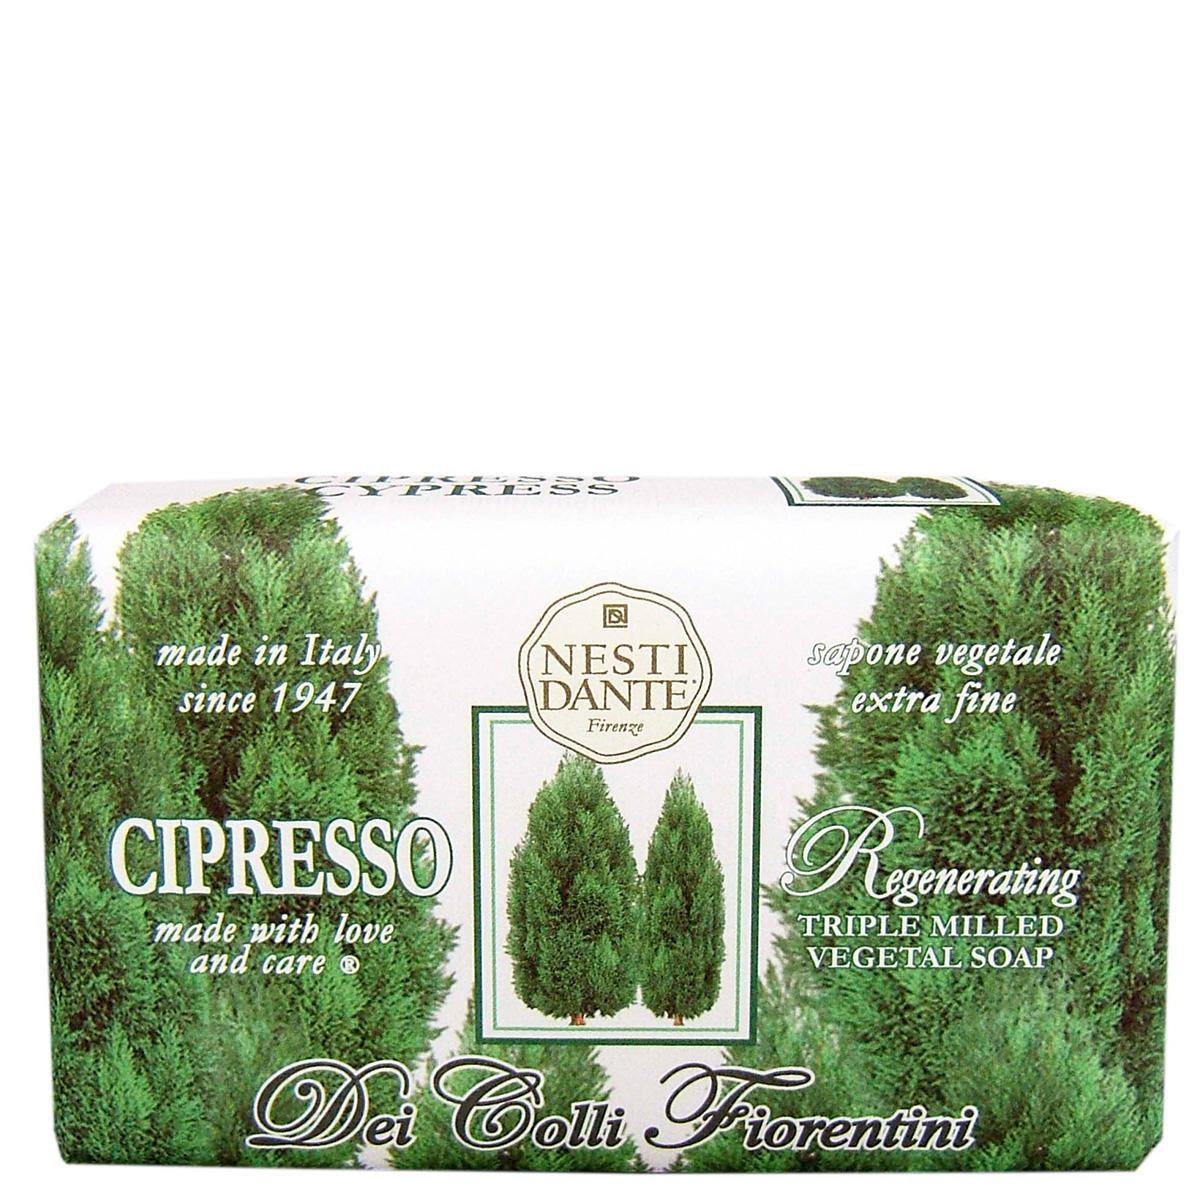 Nesti Dante Dei Colli Fiorentini Regenerating Soap Cypress Tree 250 g - 1